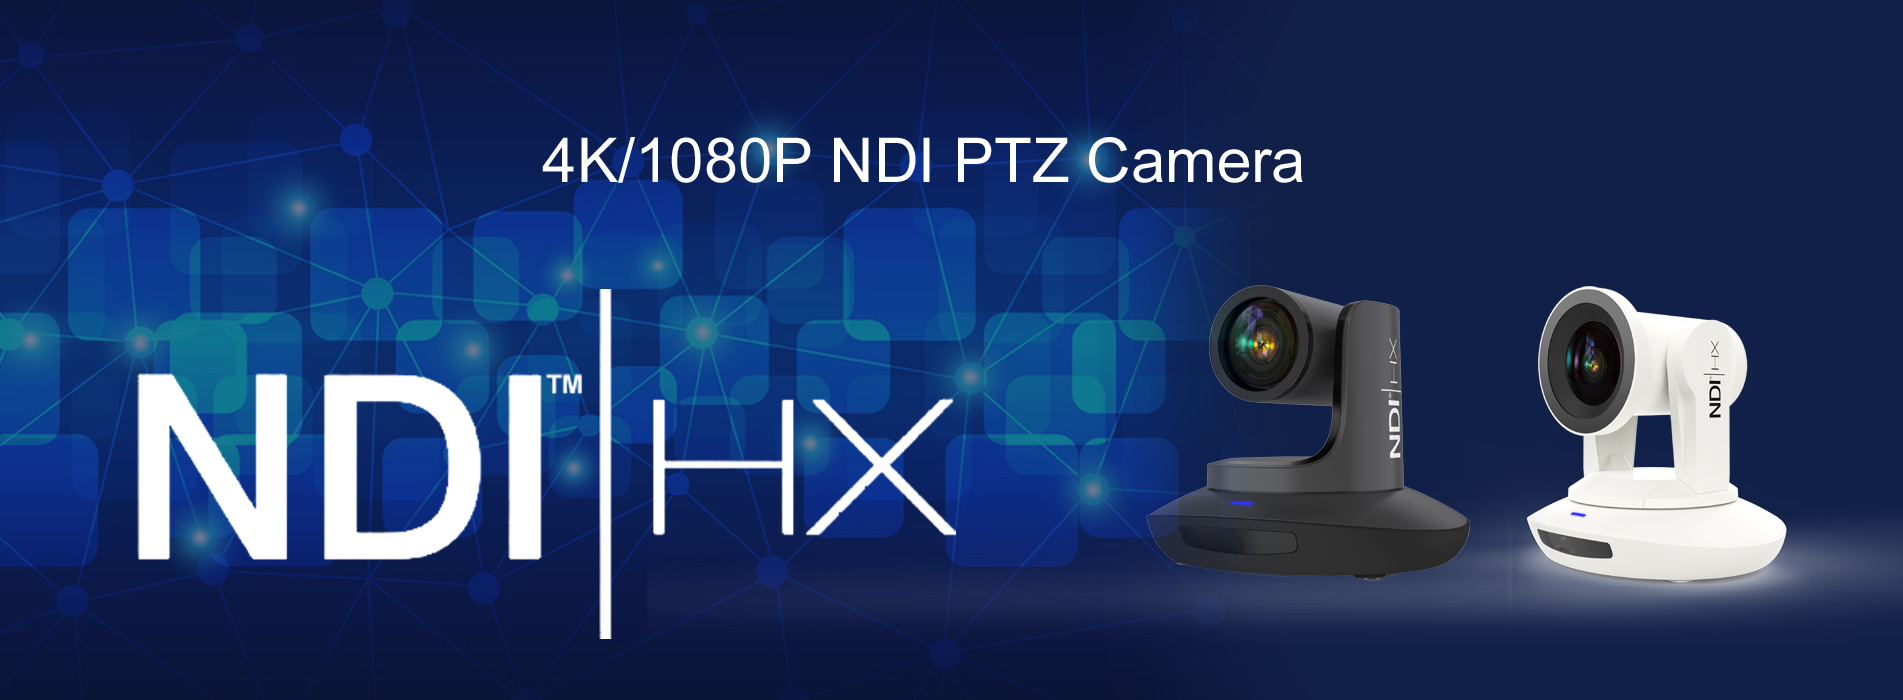 NDI PTZ Video Cameras